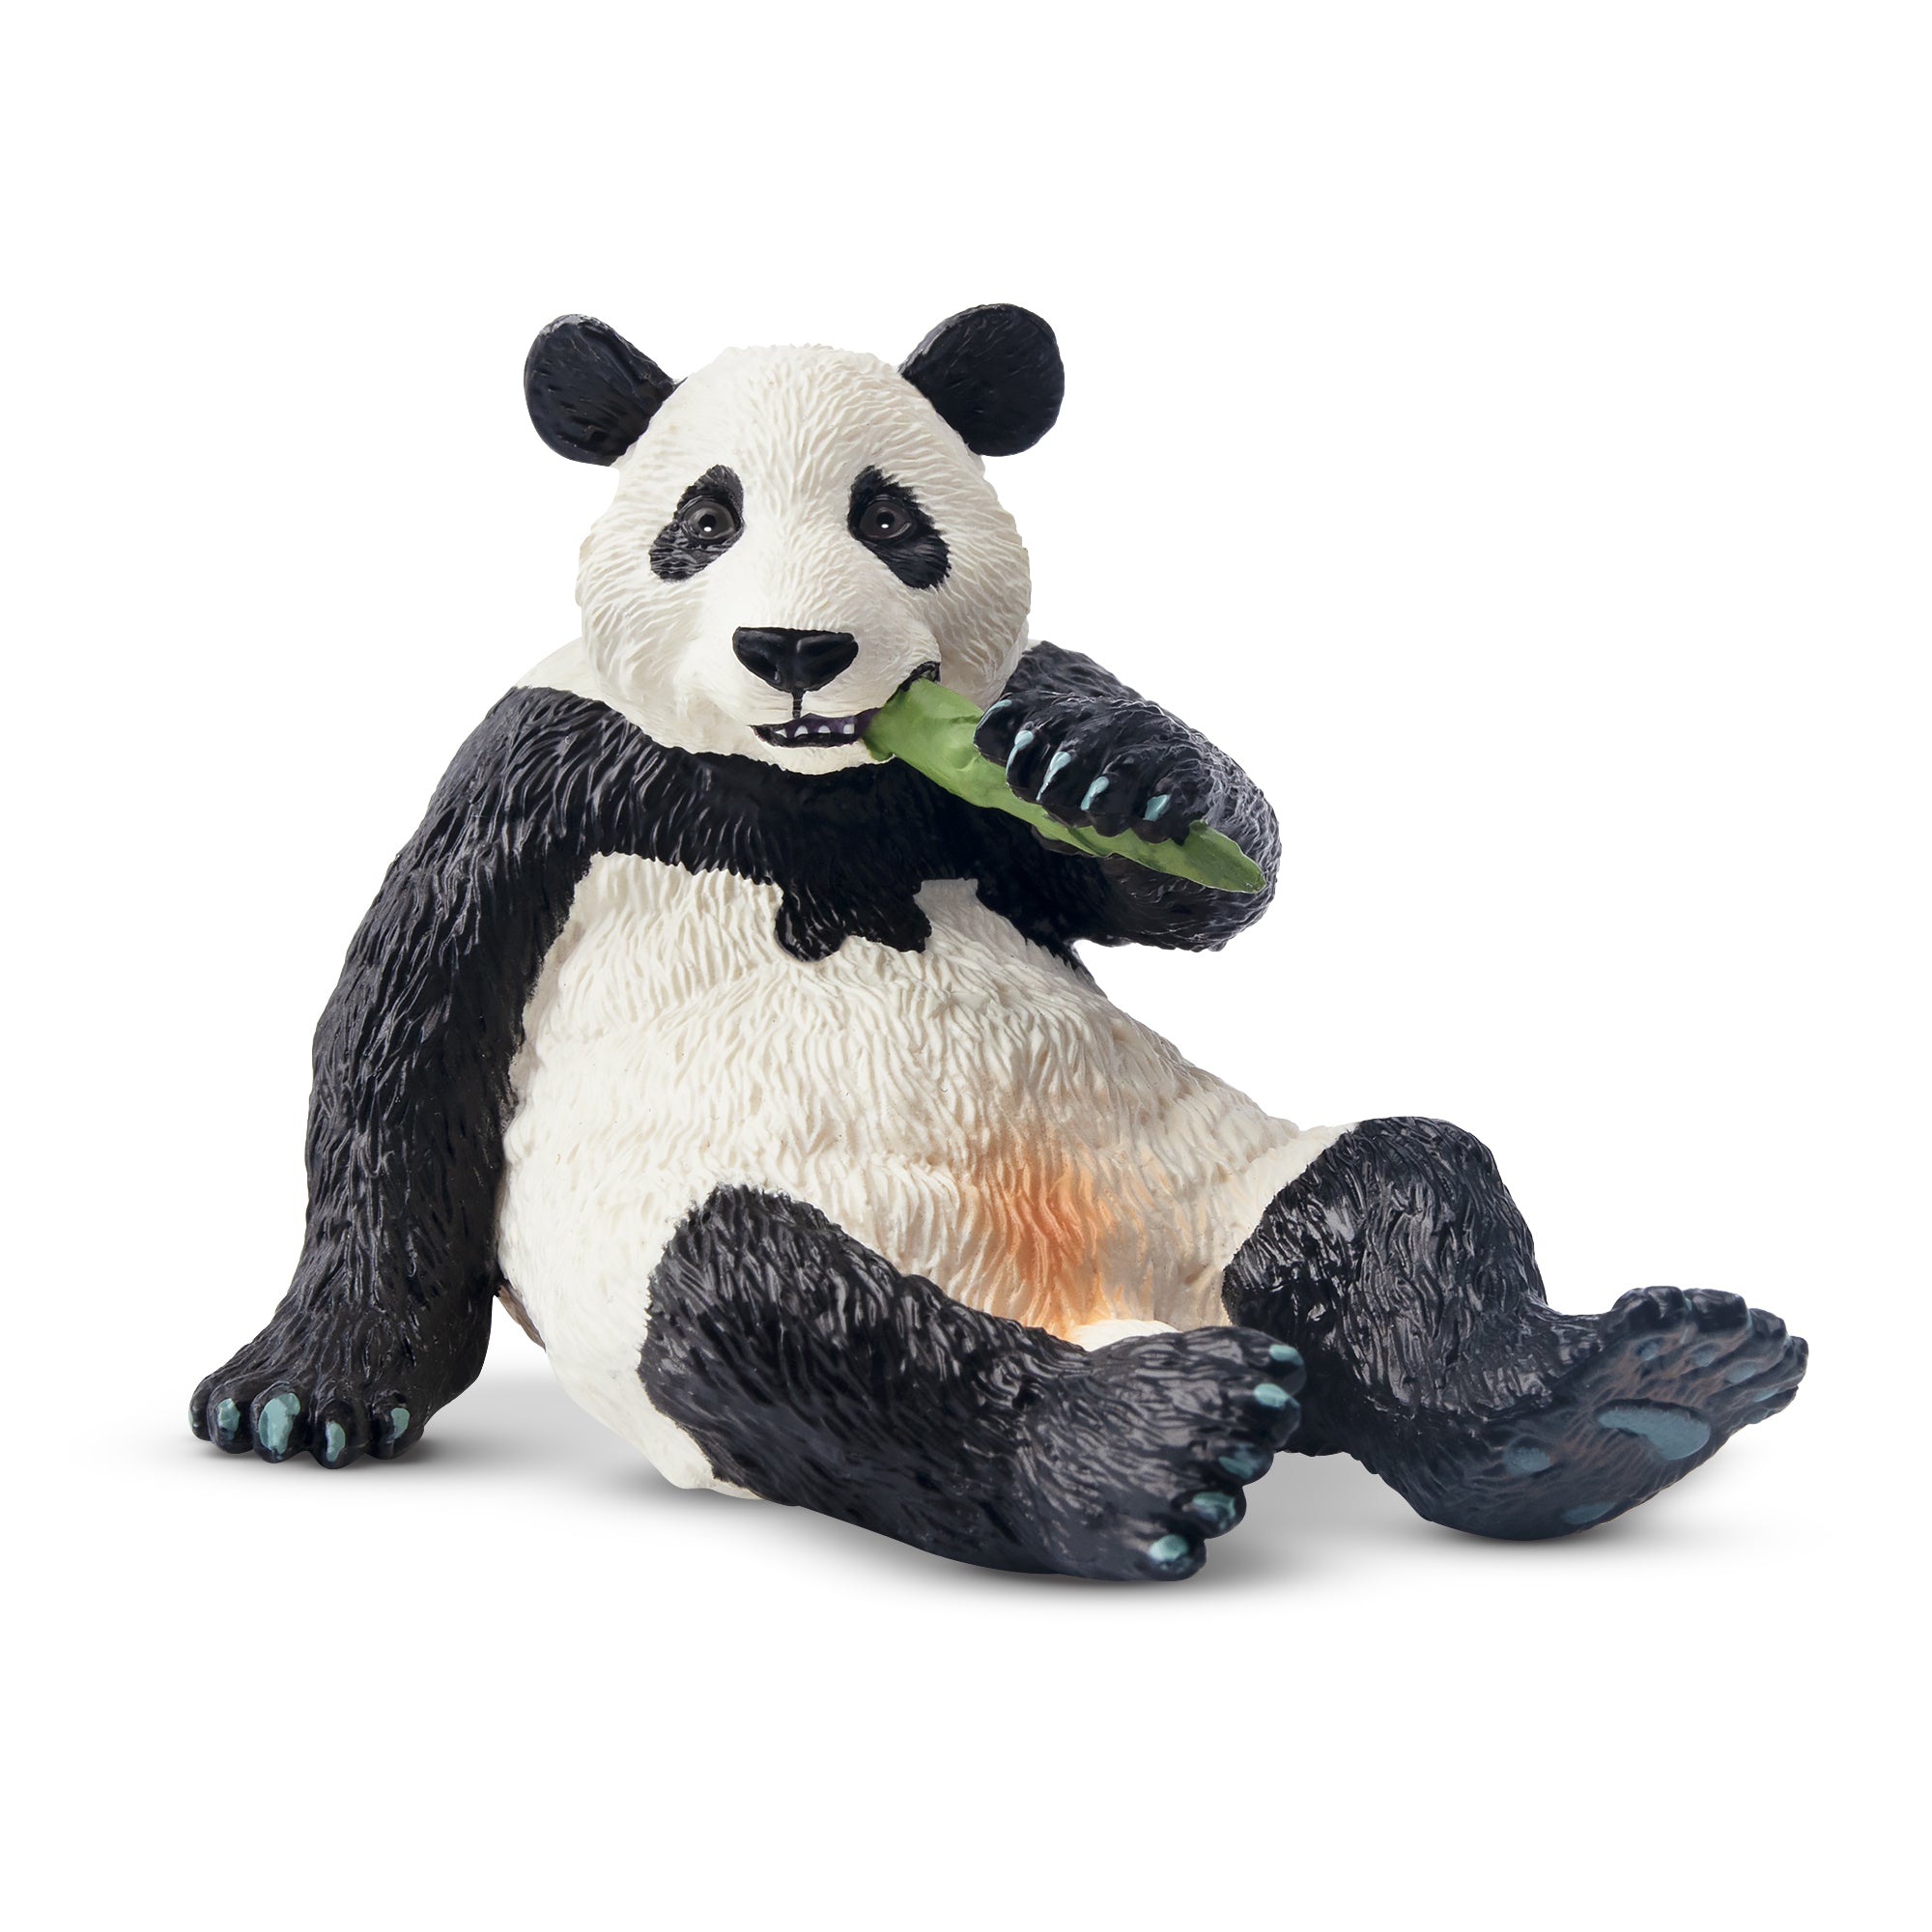 Toymany Male Giant Panda Figurine Toy